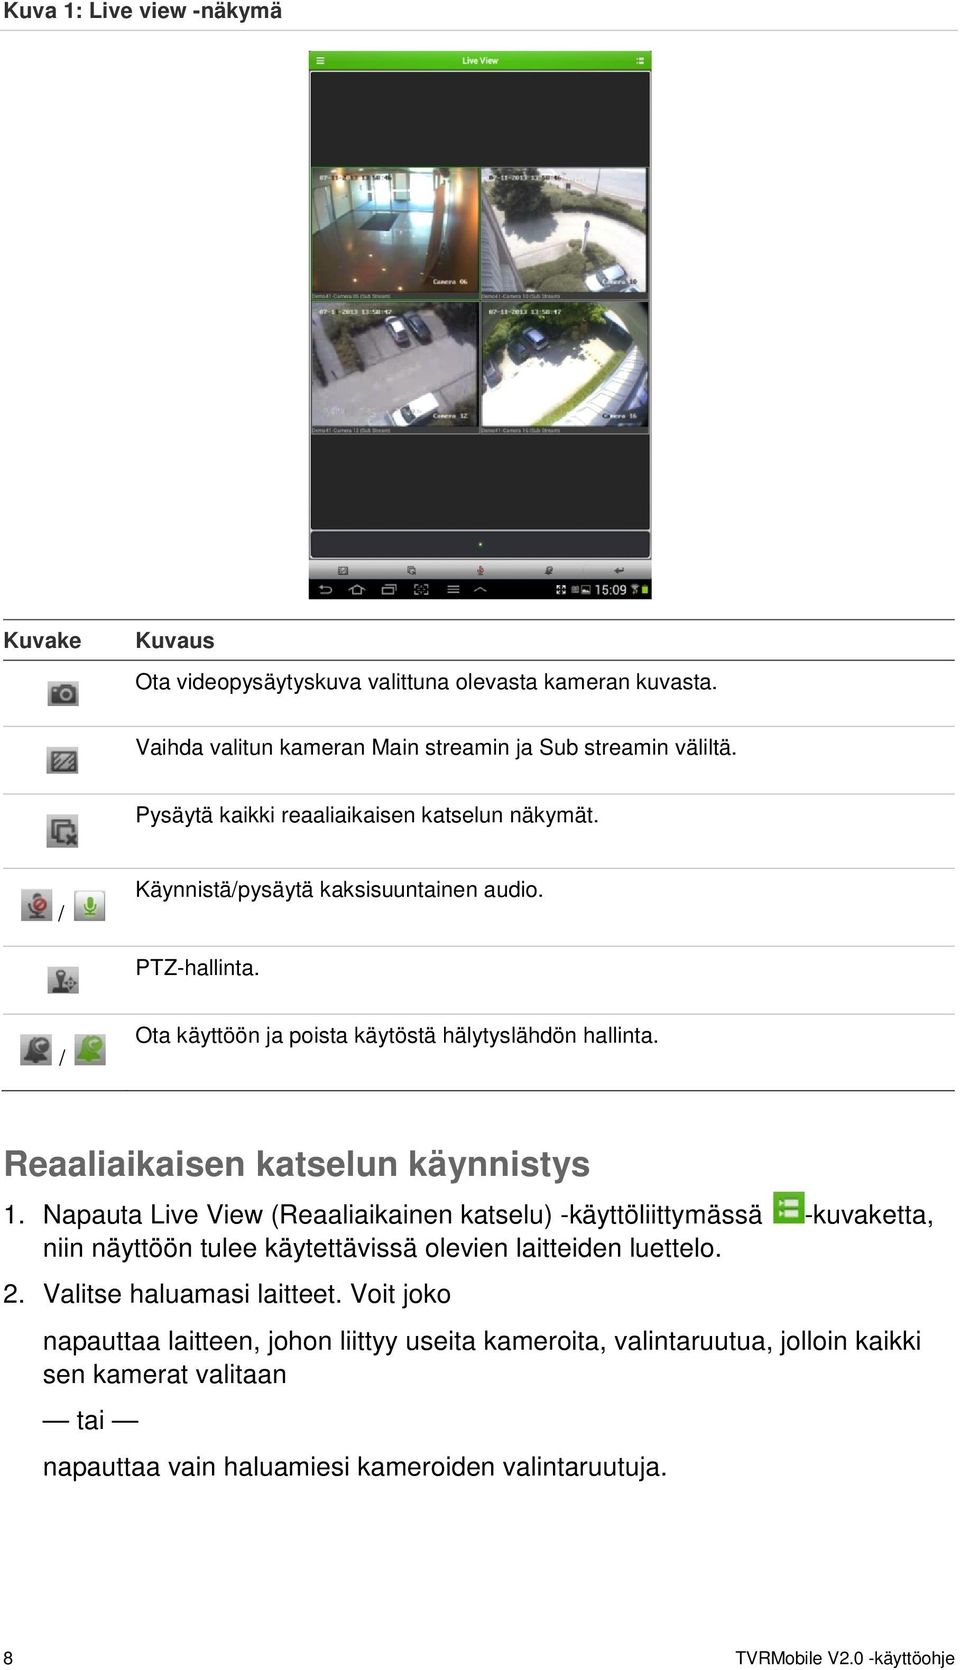 Reaaliaikaisen katselun käynnistys 1. Napauta Live View (Reaaliaikainen katselu) -käyttöliittymässä -kuvaketta, niin näyttöön tulee käytettävissä olevien laitteiden luettelo. 2.